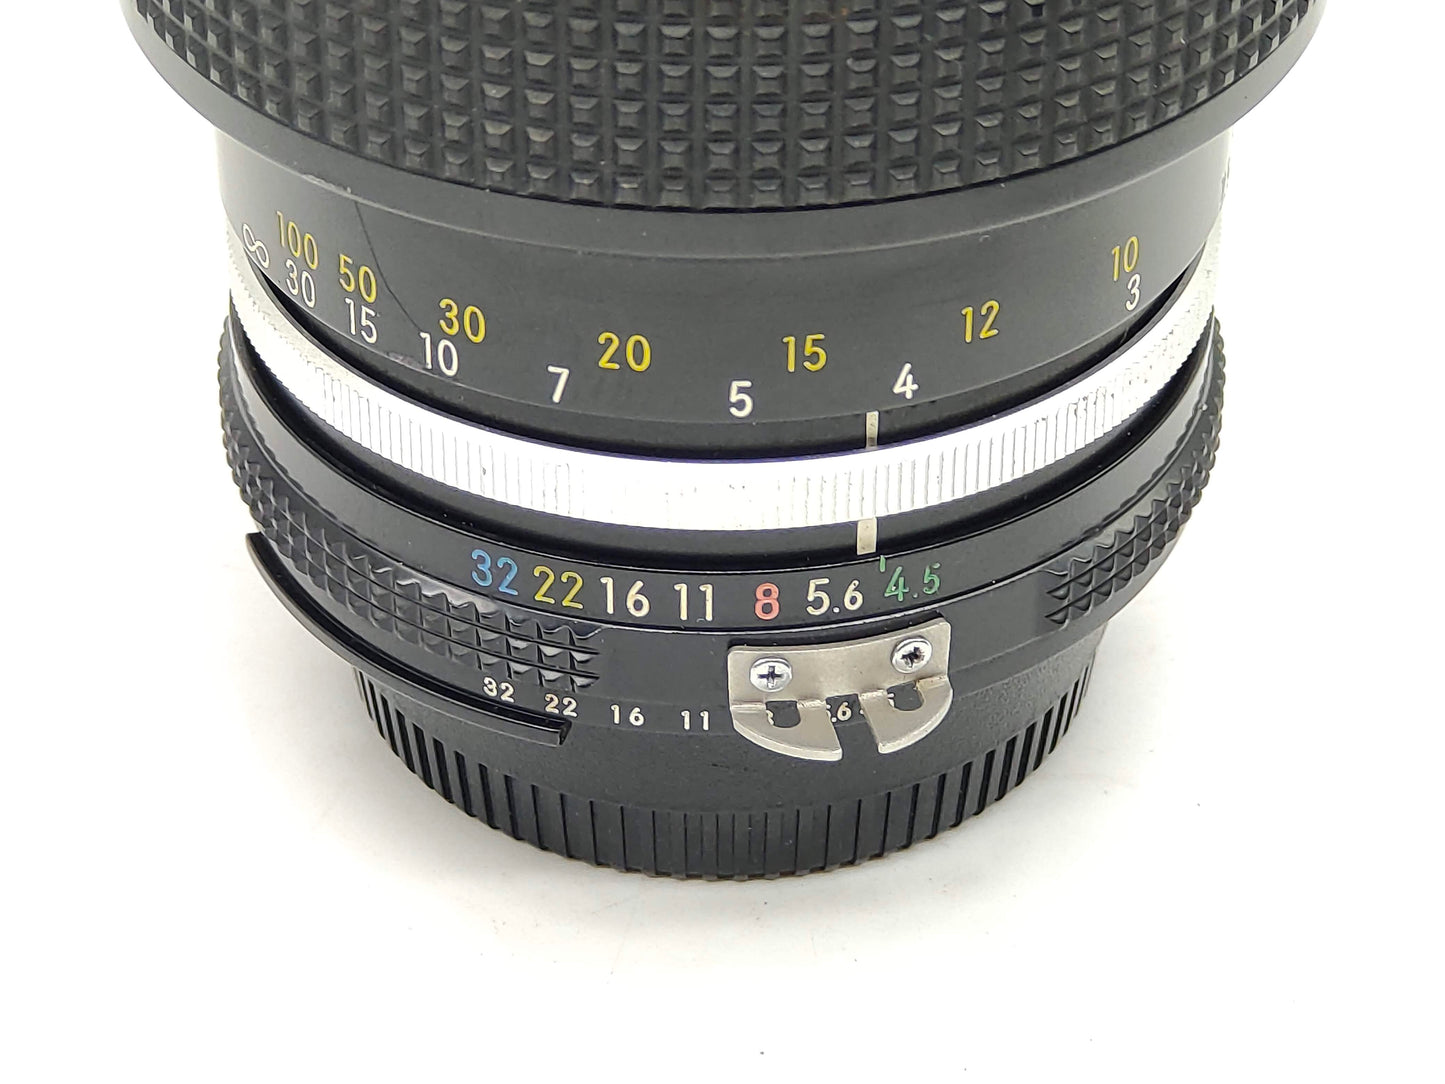 Nikon 80-200mm f/4.5 Nikkor AI lens